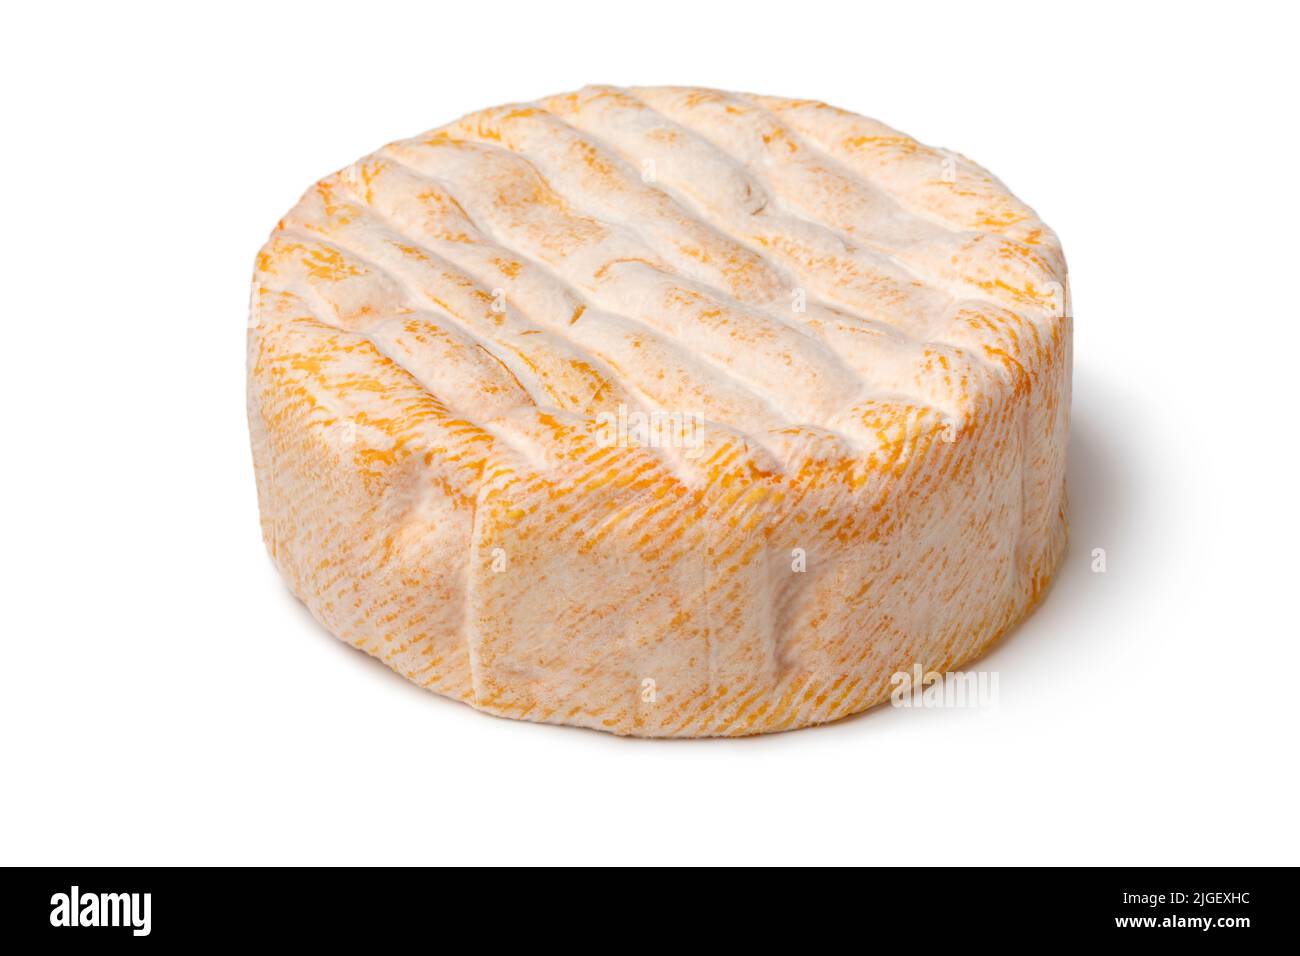 Un fromage français entier et vieilli à la croûte lavée à l'orange de la chaîne de montagnes des Vosges isolé sur fond blanc de près Banque D'Images